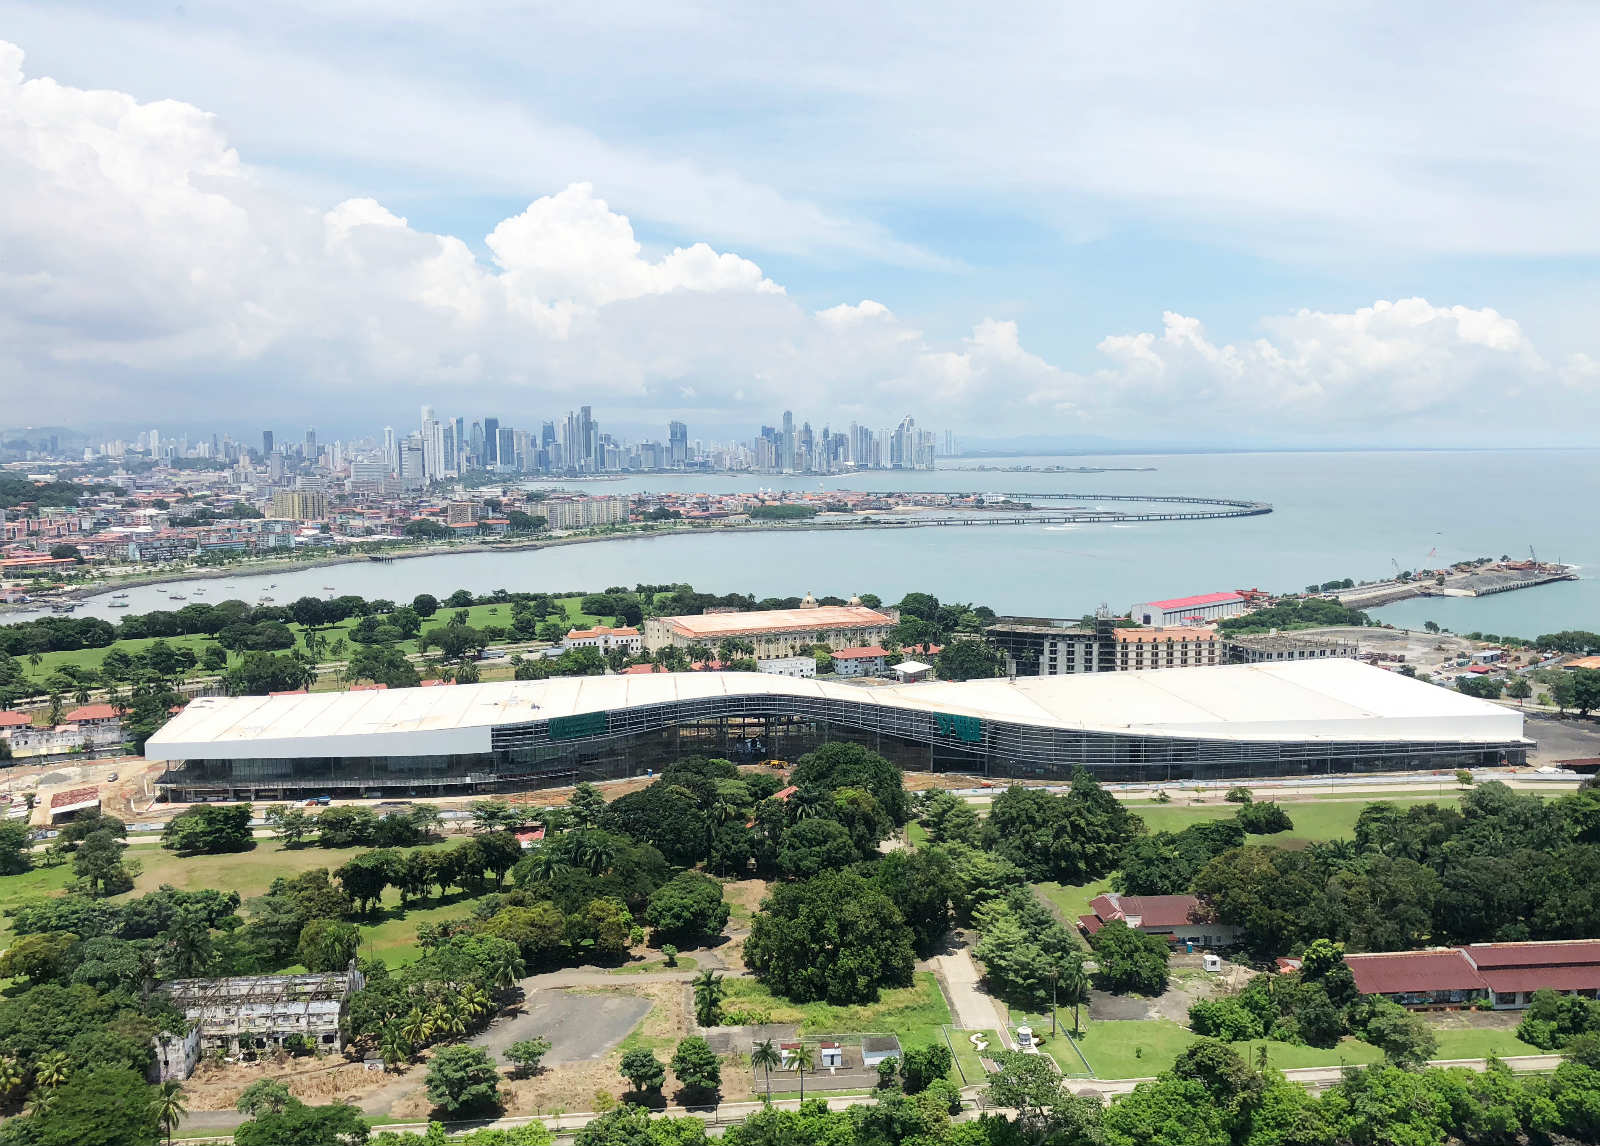 从空中鸟瞰，巴拿马国家会展中心流畅的线条和白色的外观，在繁荣的巴拿马城和忙碌的巴拿马运河的映衬下显得格外优雅端庄。_meitu_3.jpg